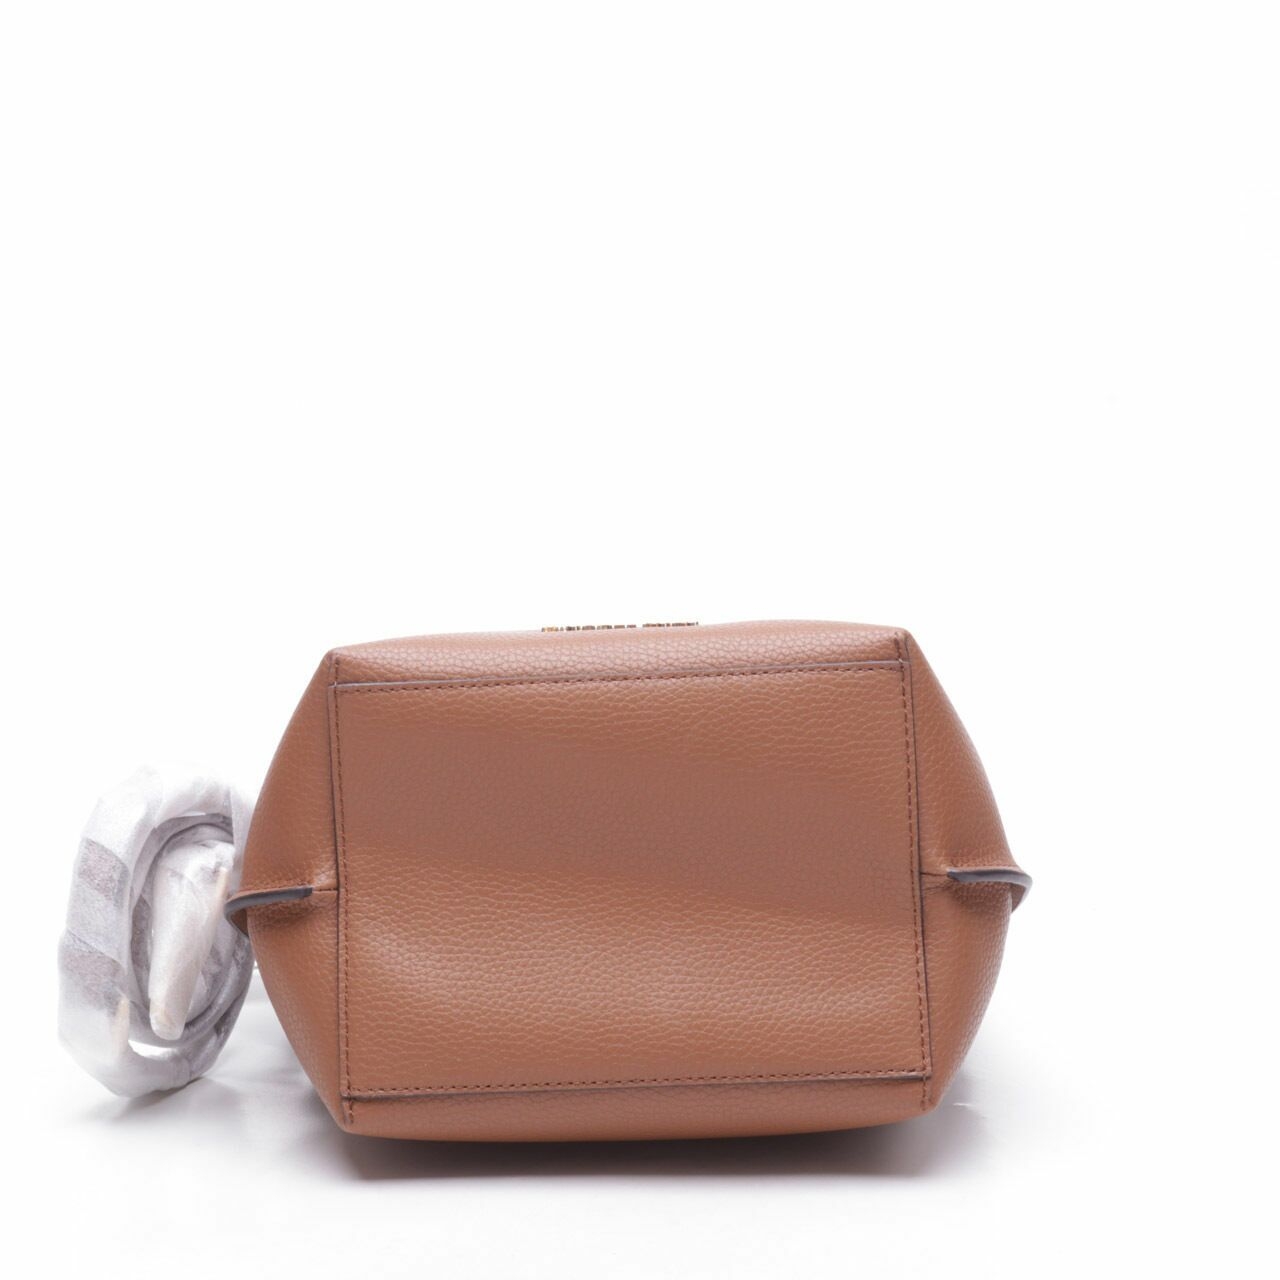 Michael Kors Emilia Brown Small Bucket Bag Luggage Sling Bag